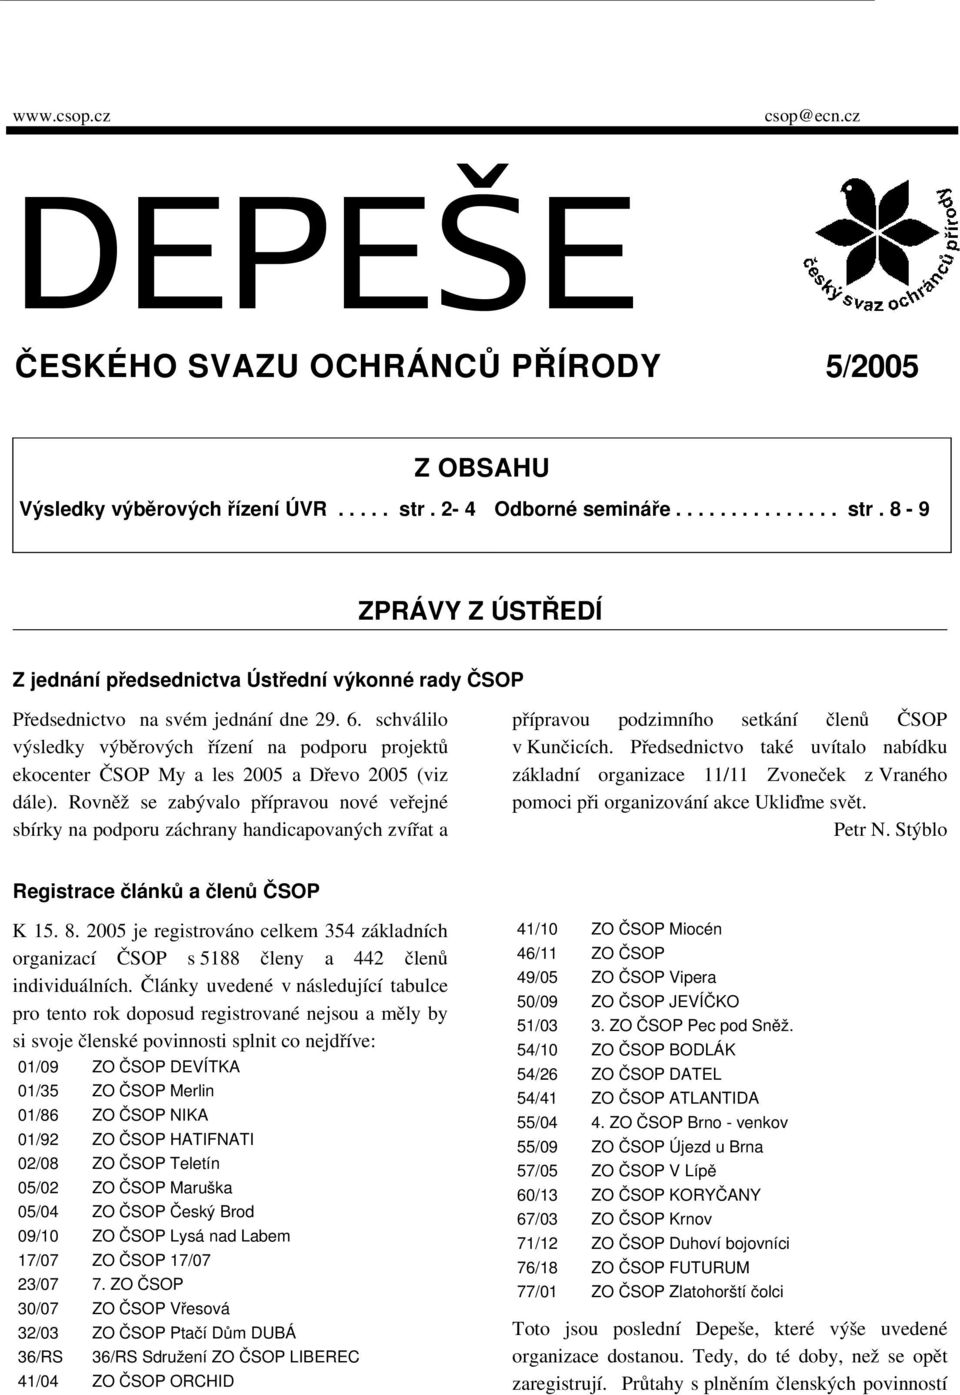 schválilo výsledky výběrových řízení na podporu projektů ekocenter ČSOP My a les 2005 a Dřevo 2005 (viz dále).